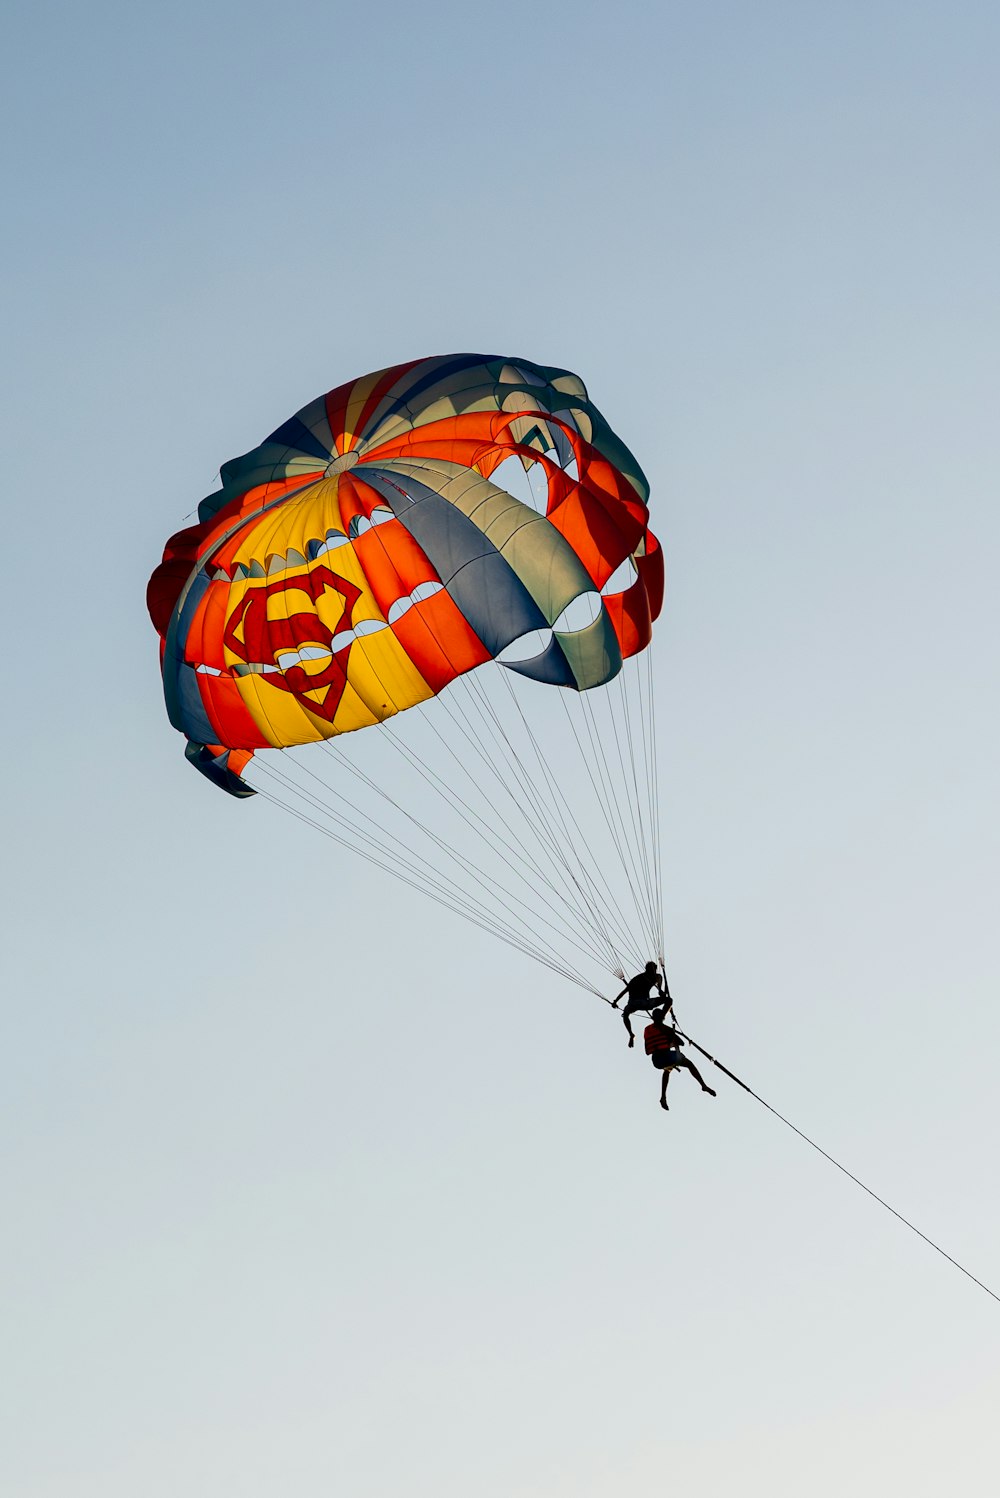 uma pessoa está parasailing no céu com um paraquedas